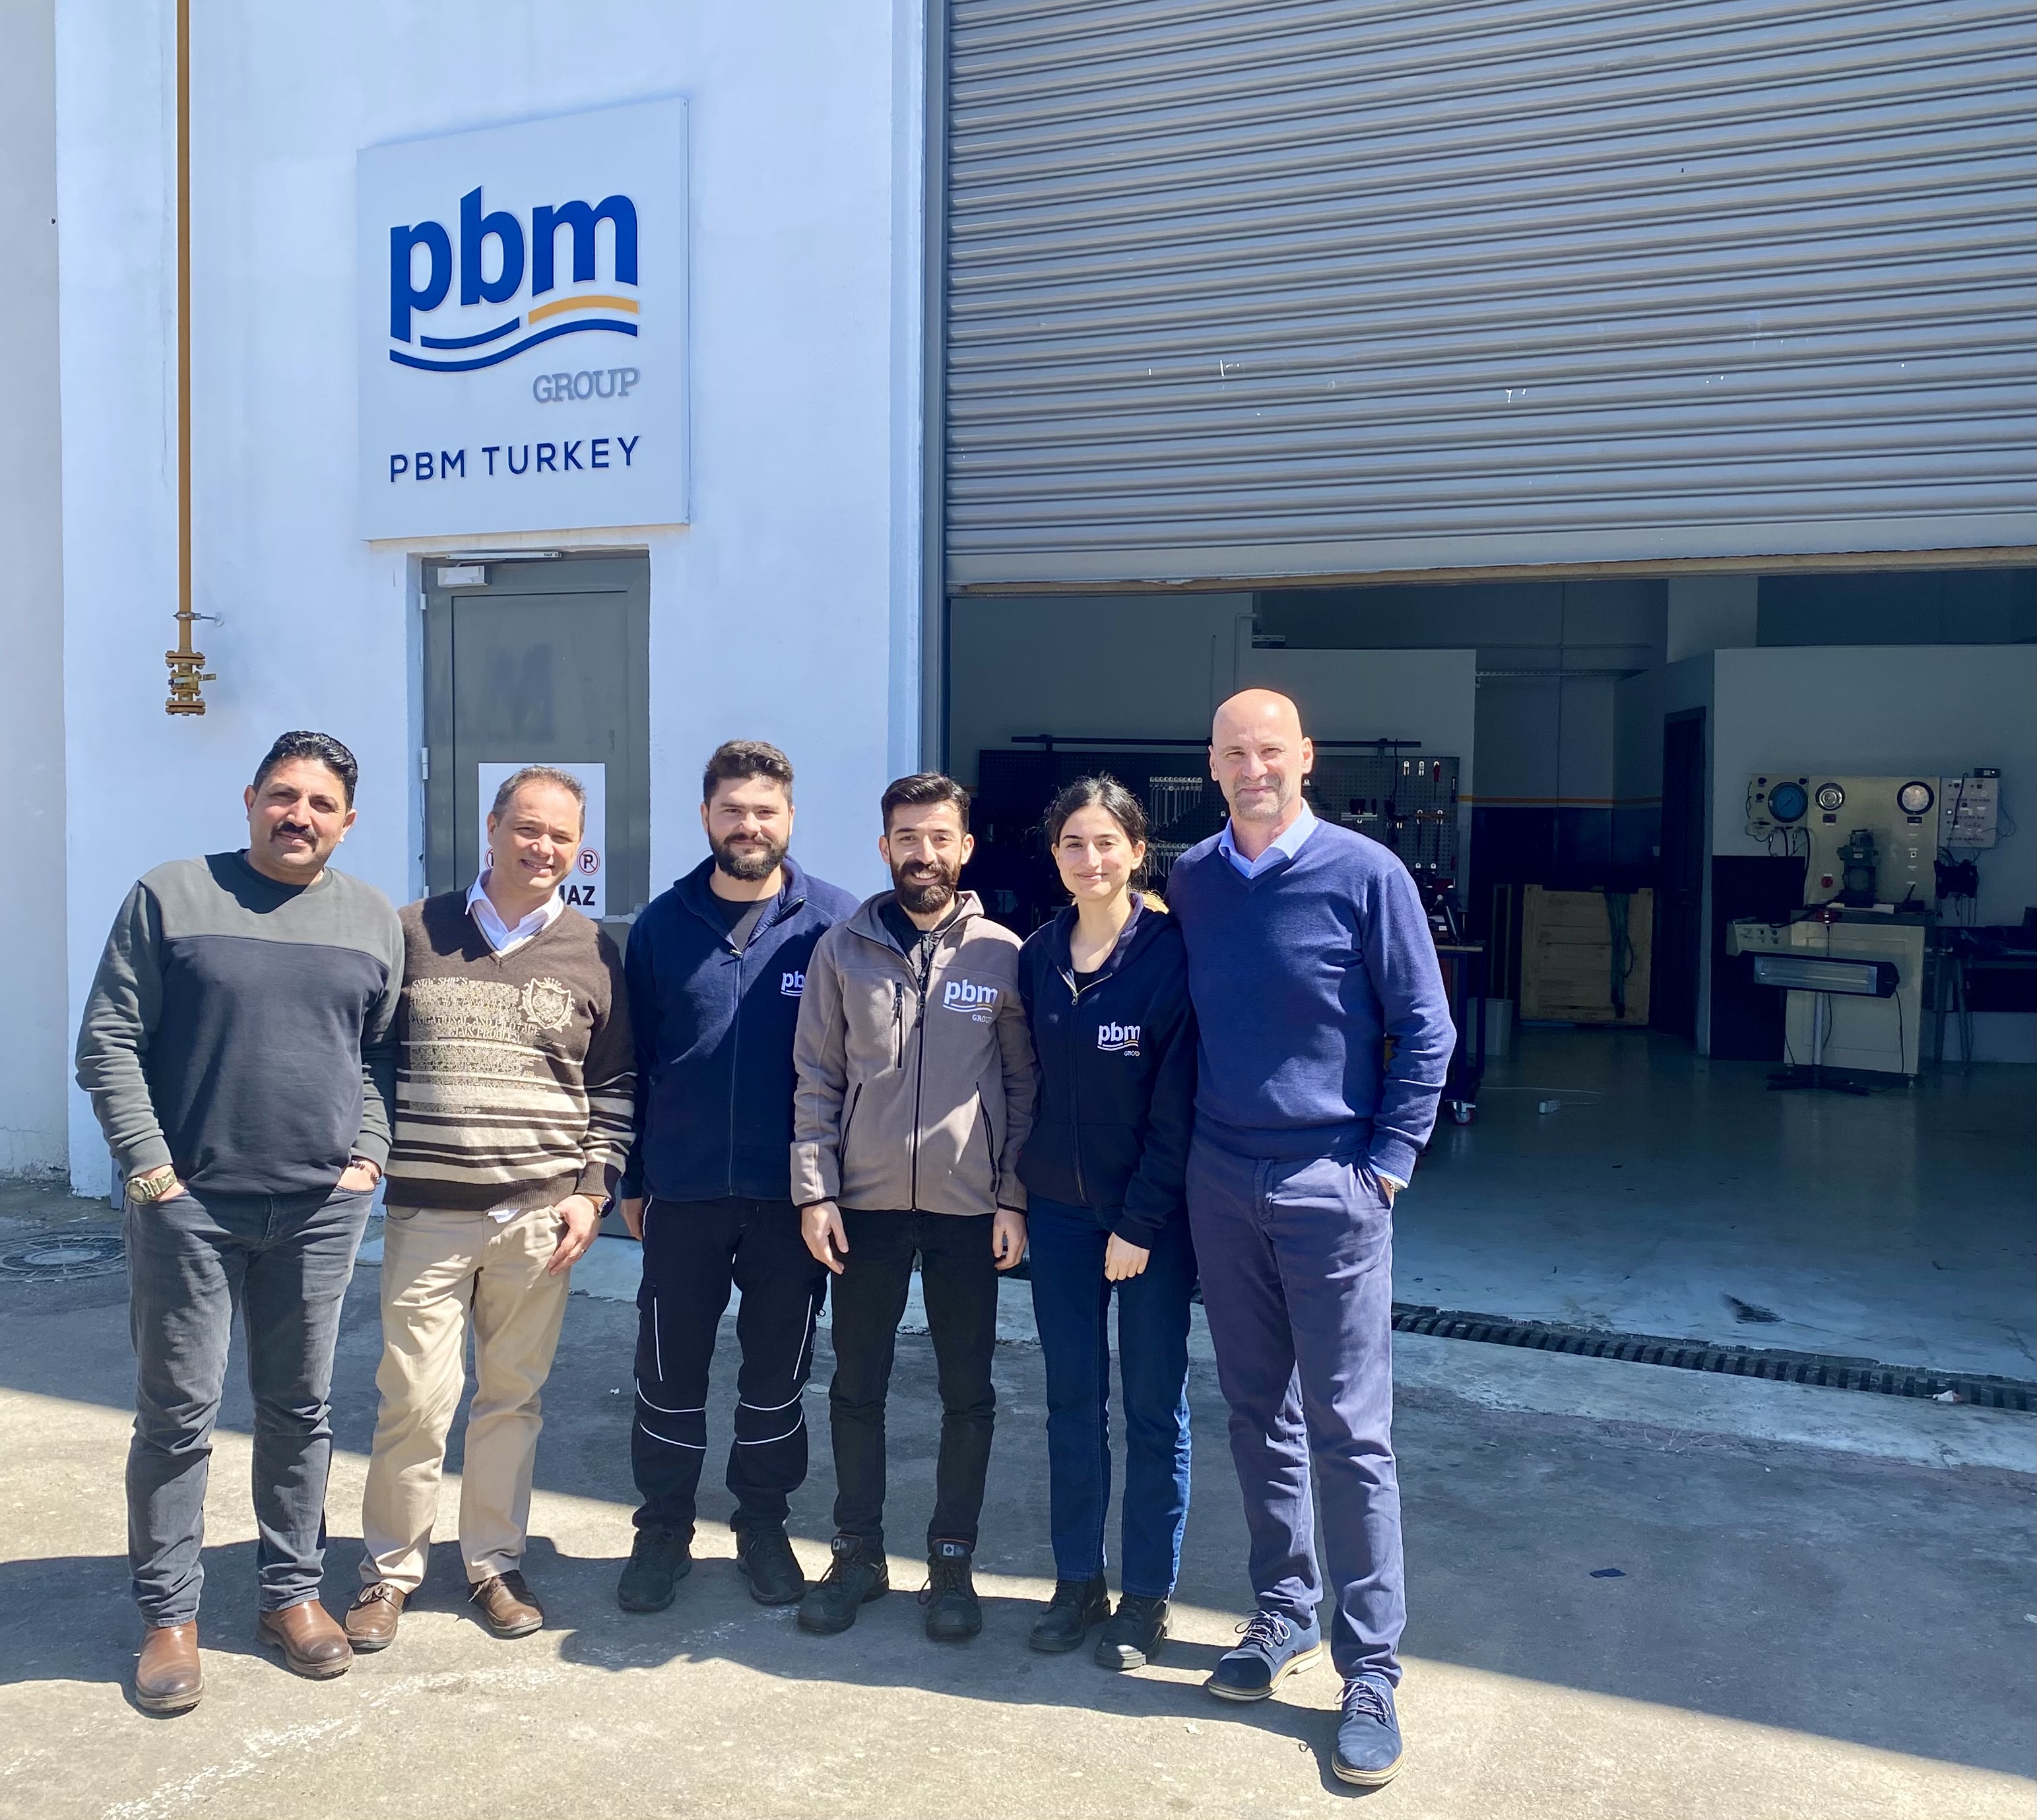 PBM Turkey onboards new management team!